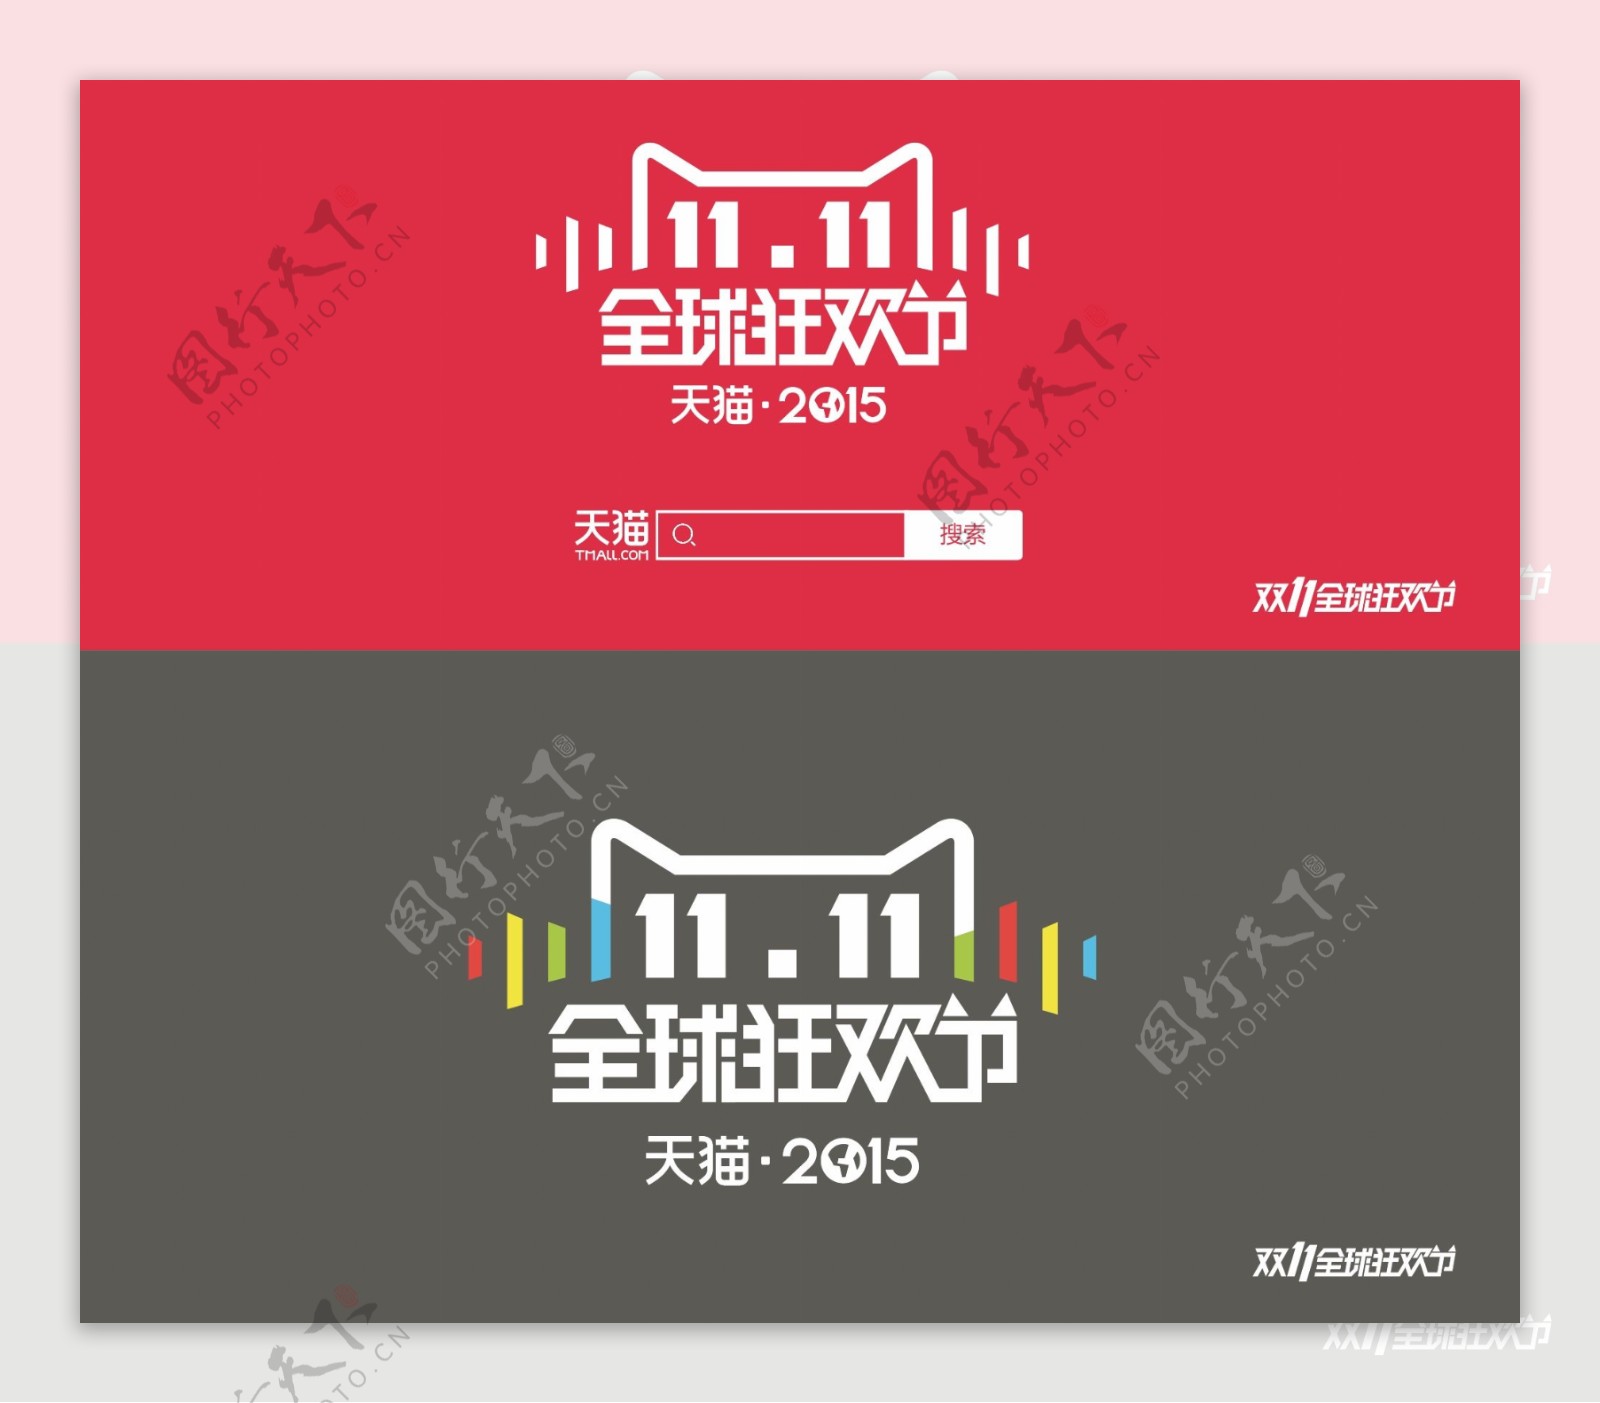 2015双十一全球狂欢节logo